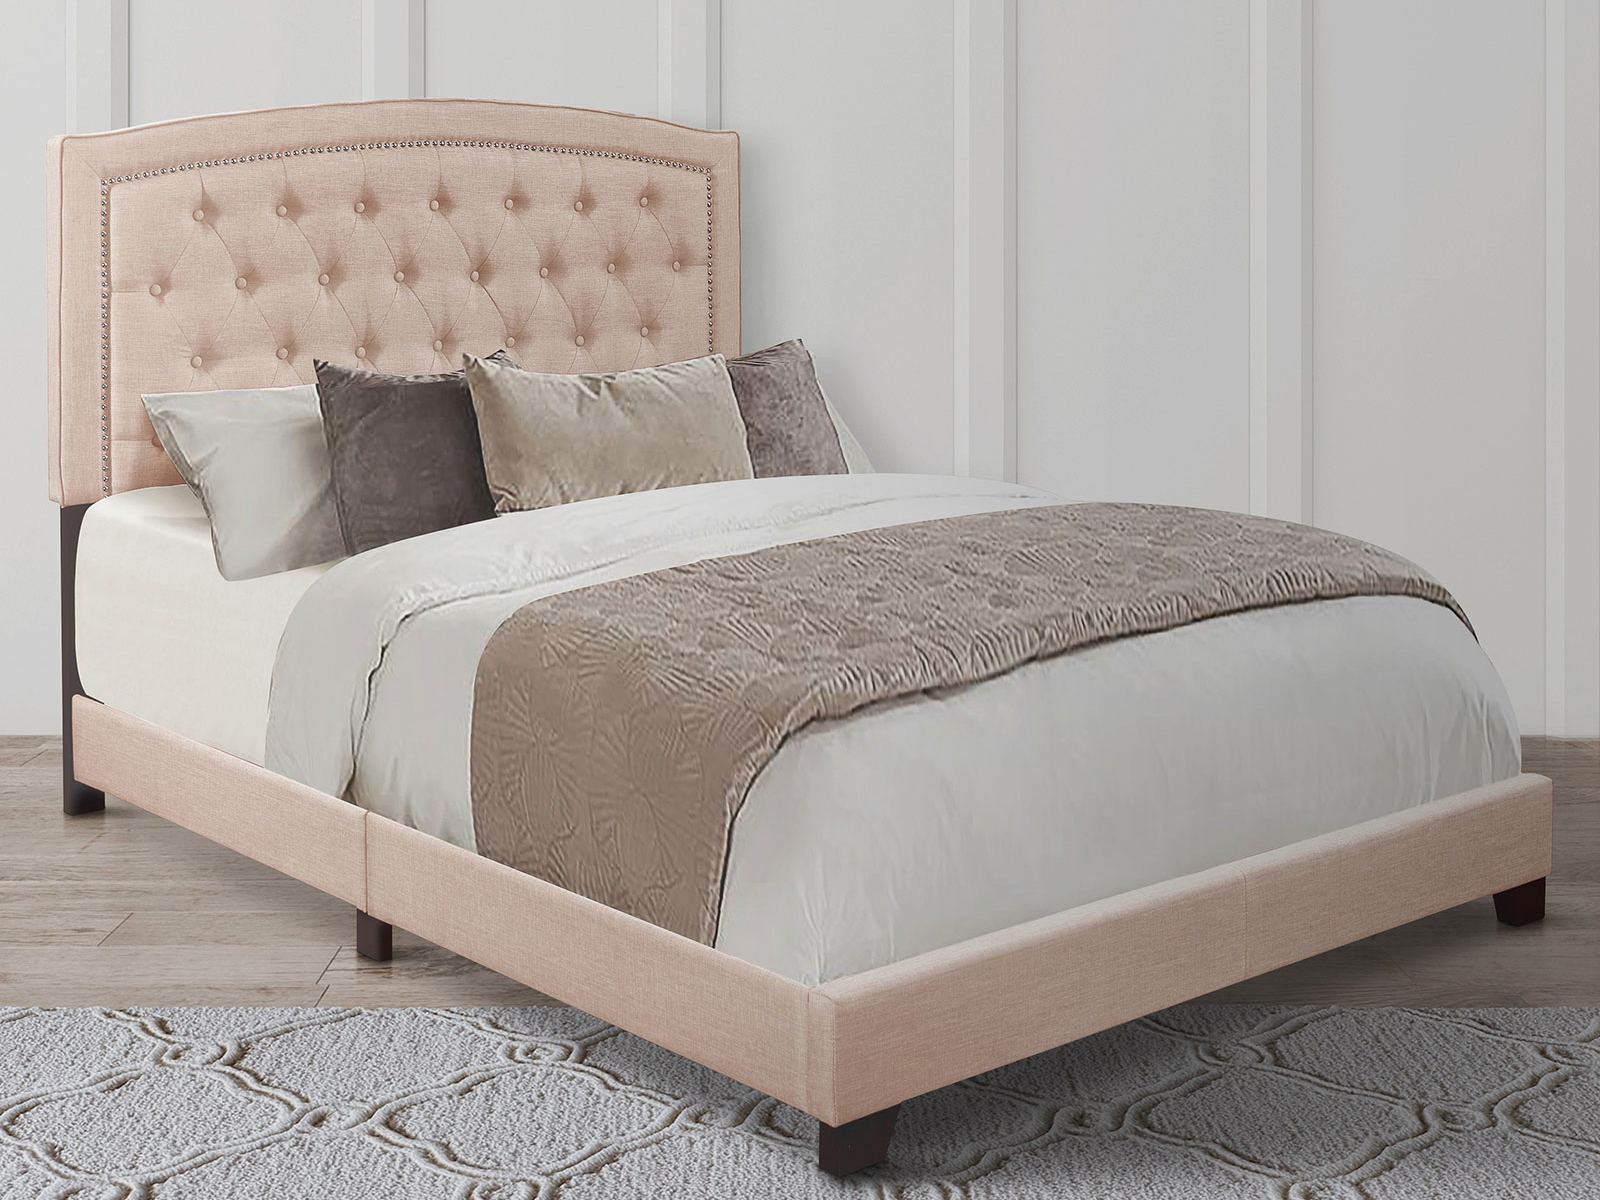 Homelegance Upholstered Bed Set | King | Linden Bed Frame & Headboard | Beige